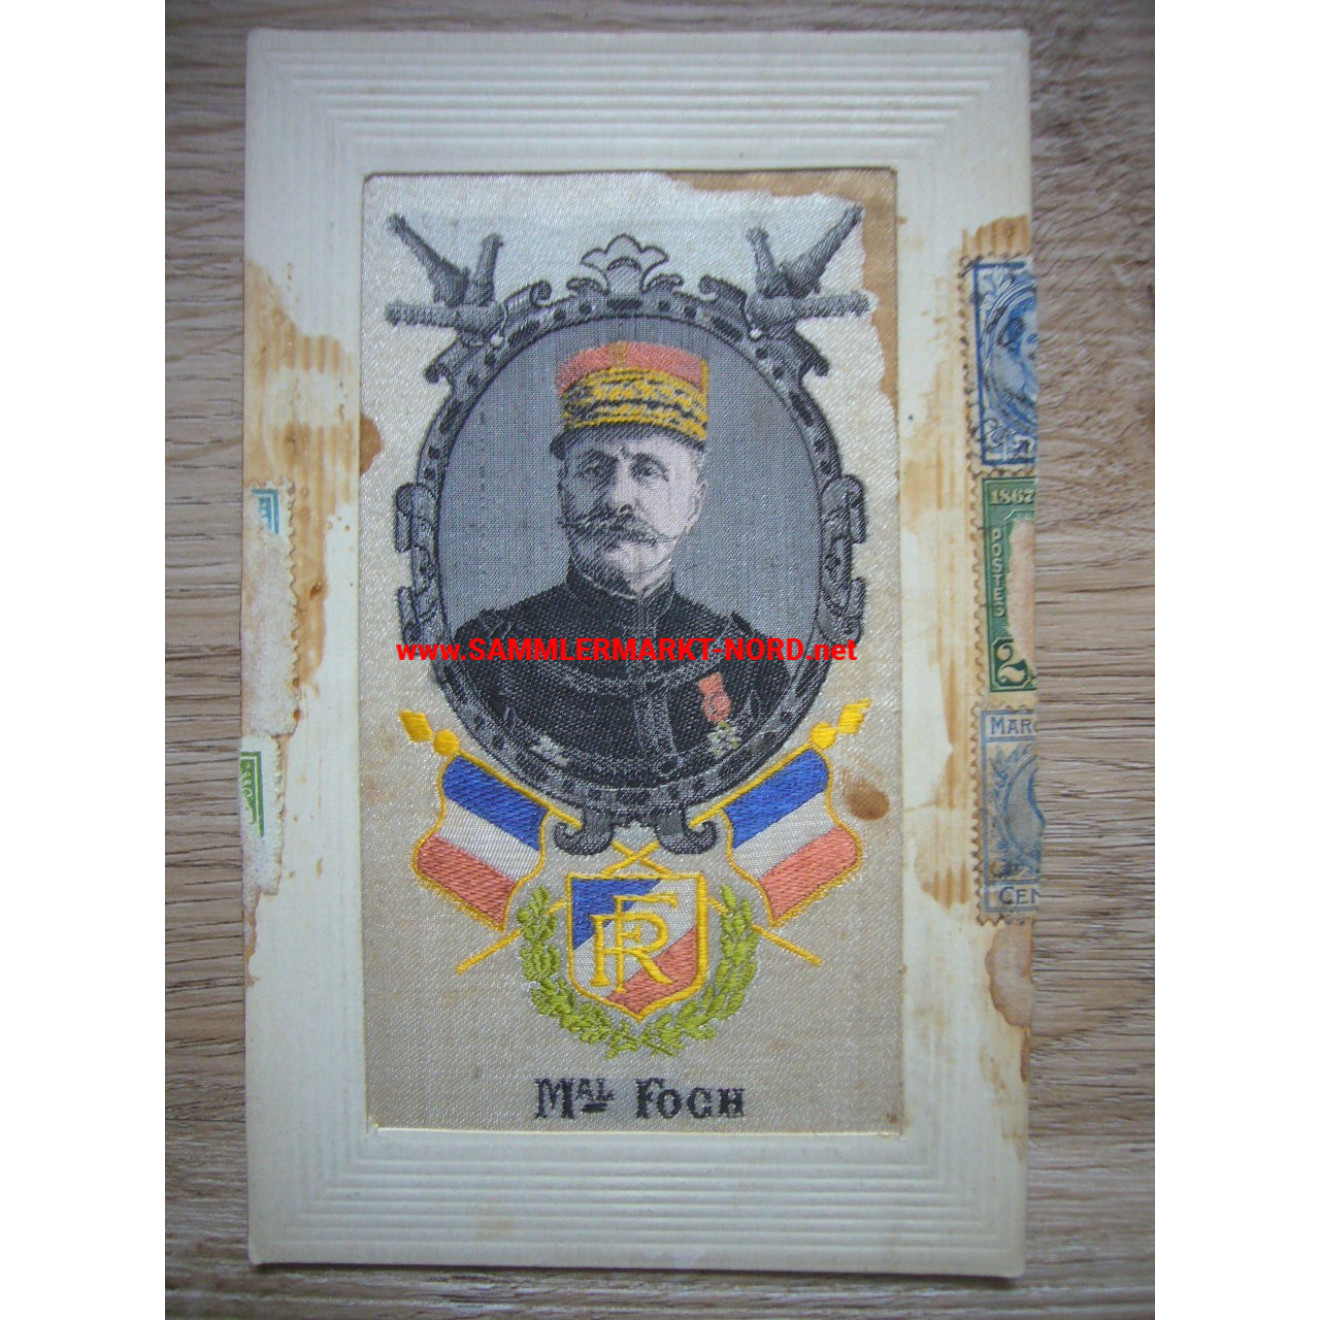 Frankreich - Marschall Ferdinand Foch - Seidenpostkarte